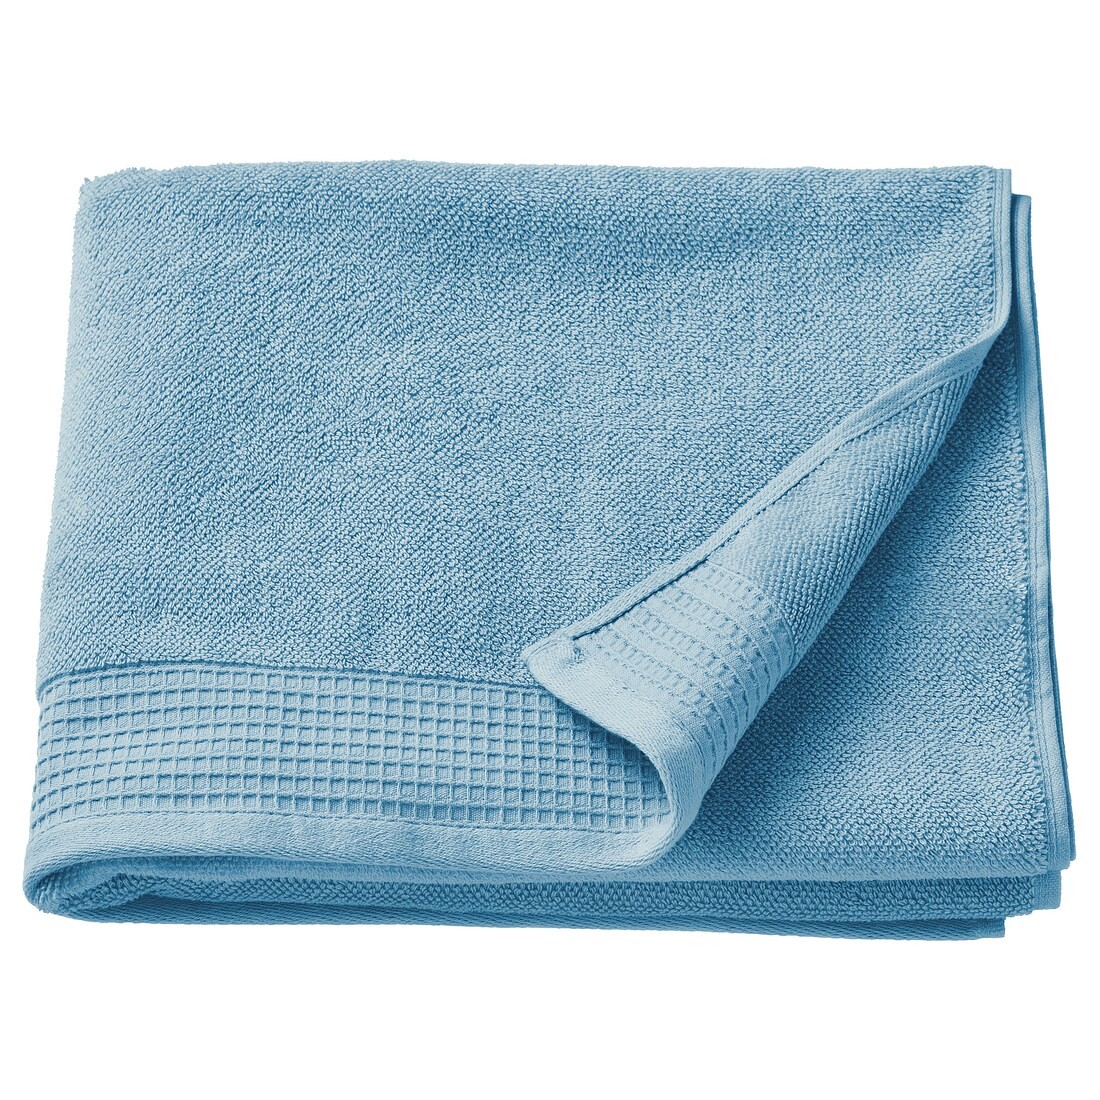 VINARN ВИНАРН Банное полотенце, синий, 70x140 см